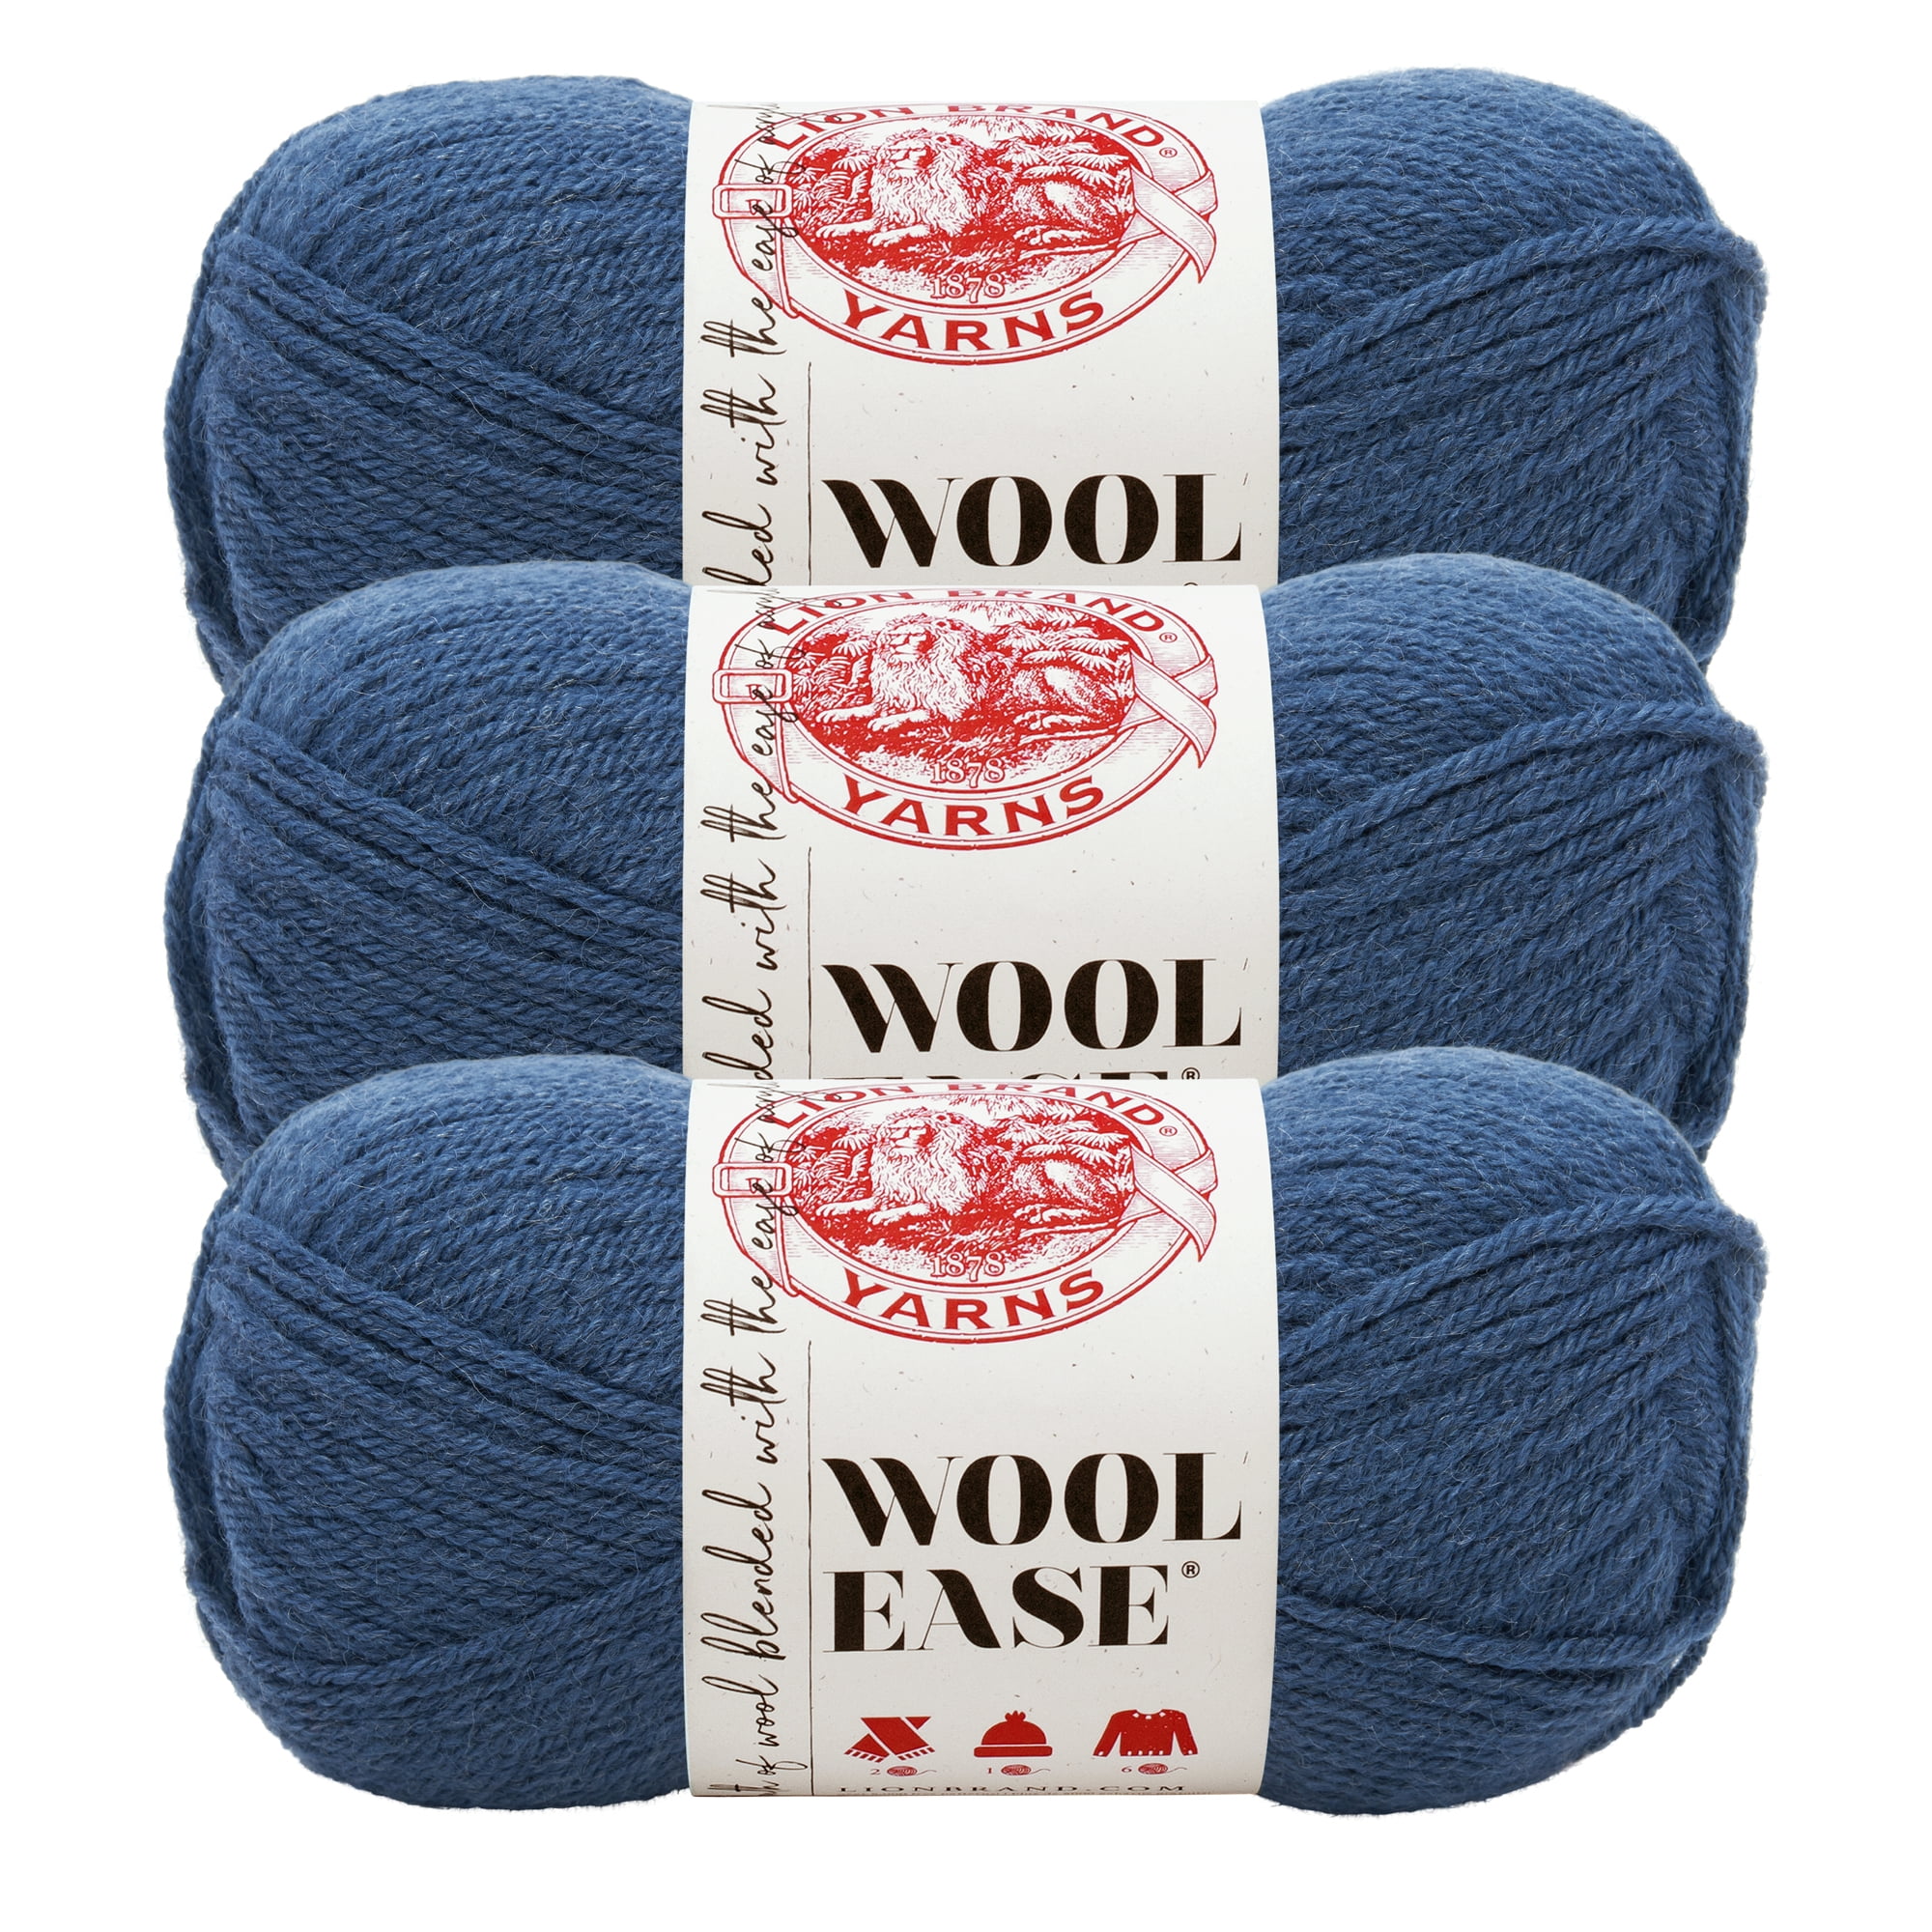 Lion Brand Yarn Wool-Ease Denim Classic Worsted Medium Acrylic, Wool Blue  Yarn 3 Pack